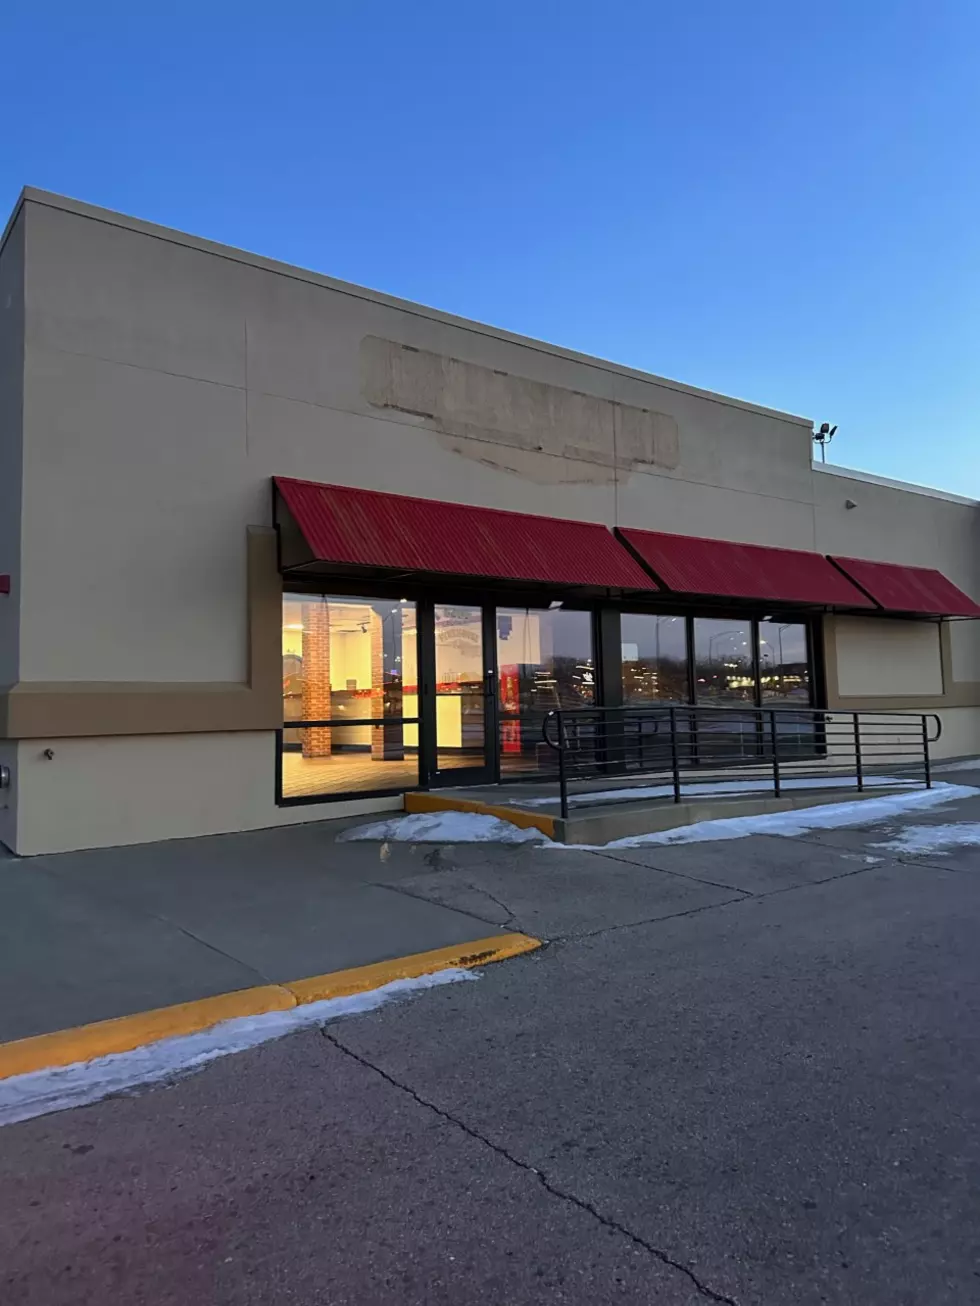 Very Popular Burger Restaurant Opening Cedar Falls Location